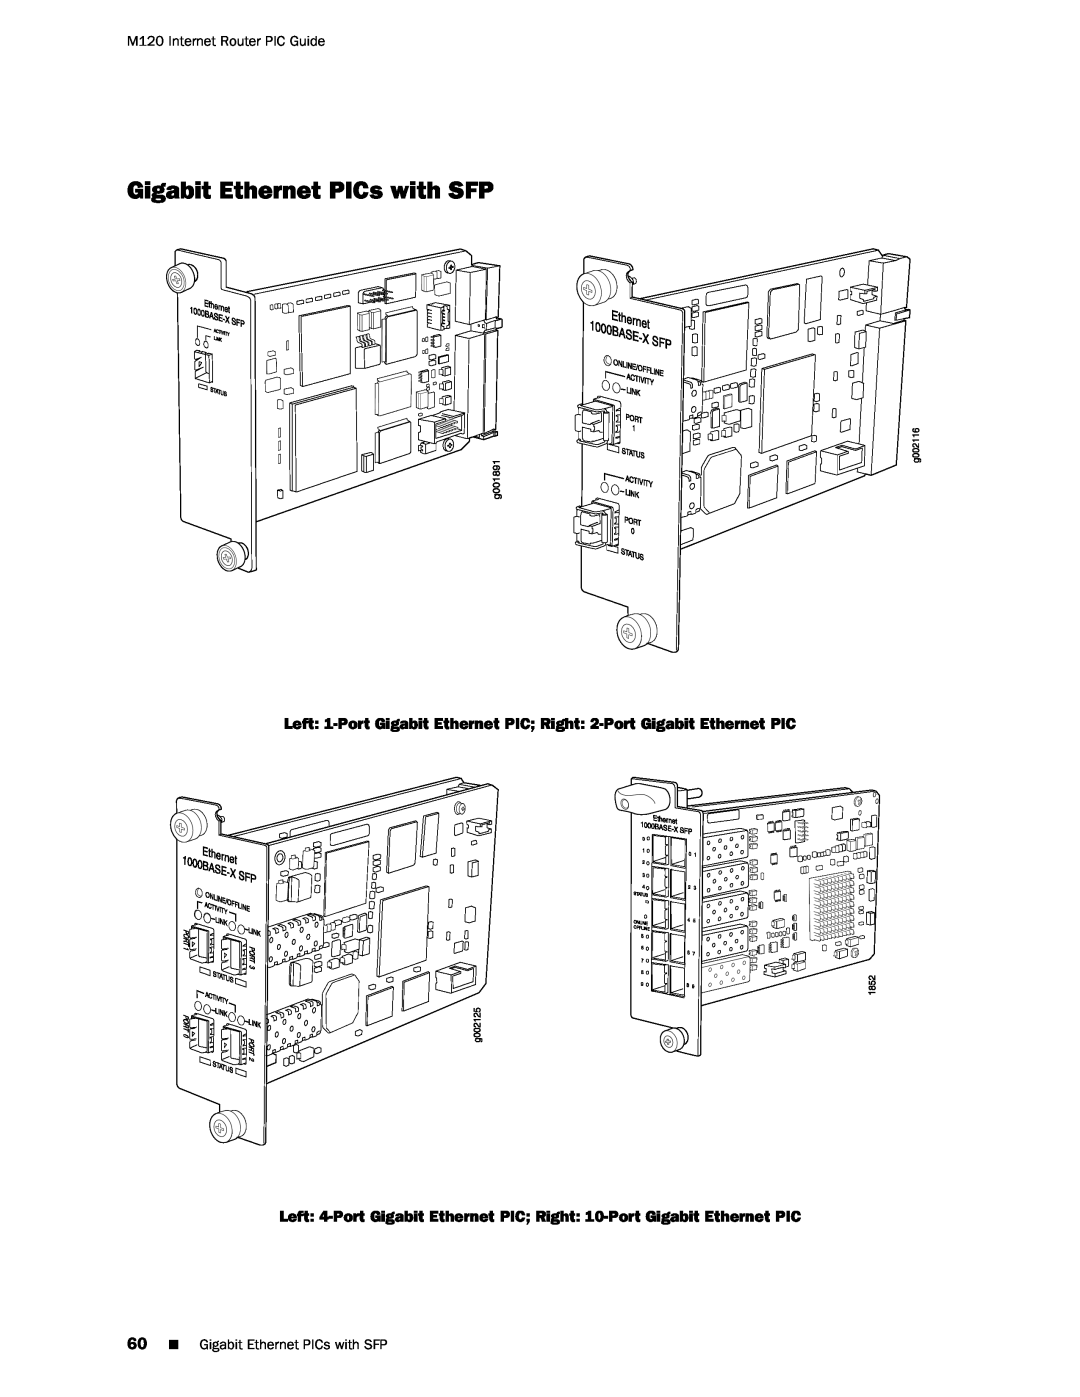 Juniper Networks M120 Gigabit Ethernet PICs with SFP, Left 1-Port Gigabit Ethernet PIC Right 2-Port Gigabit Ethernet PIC 